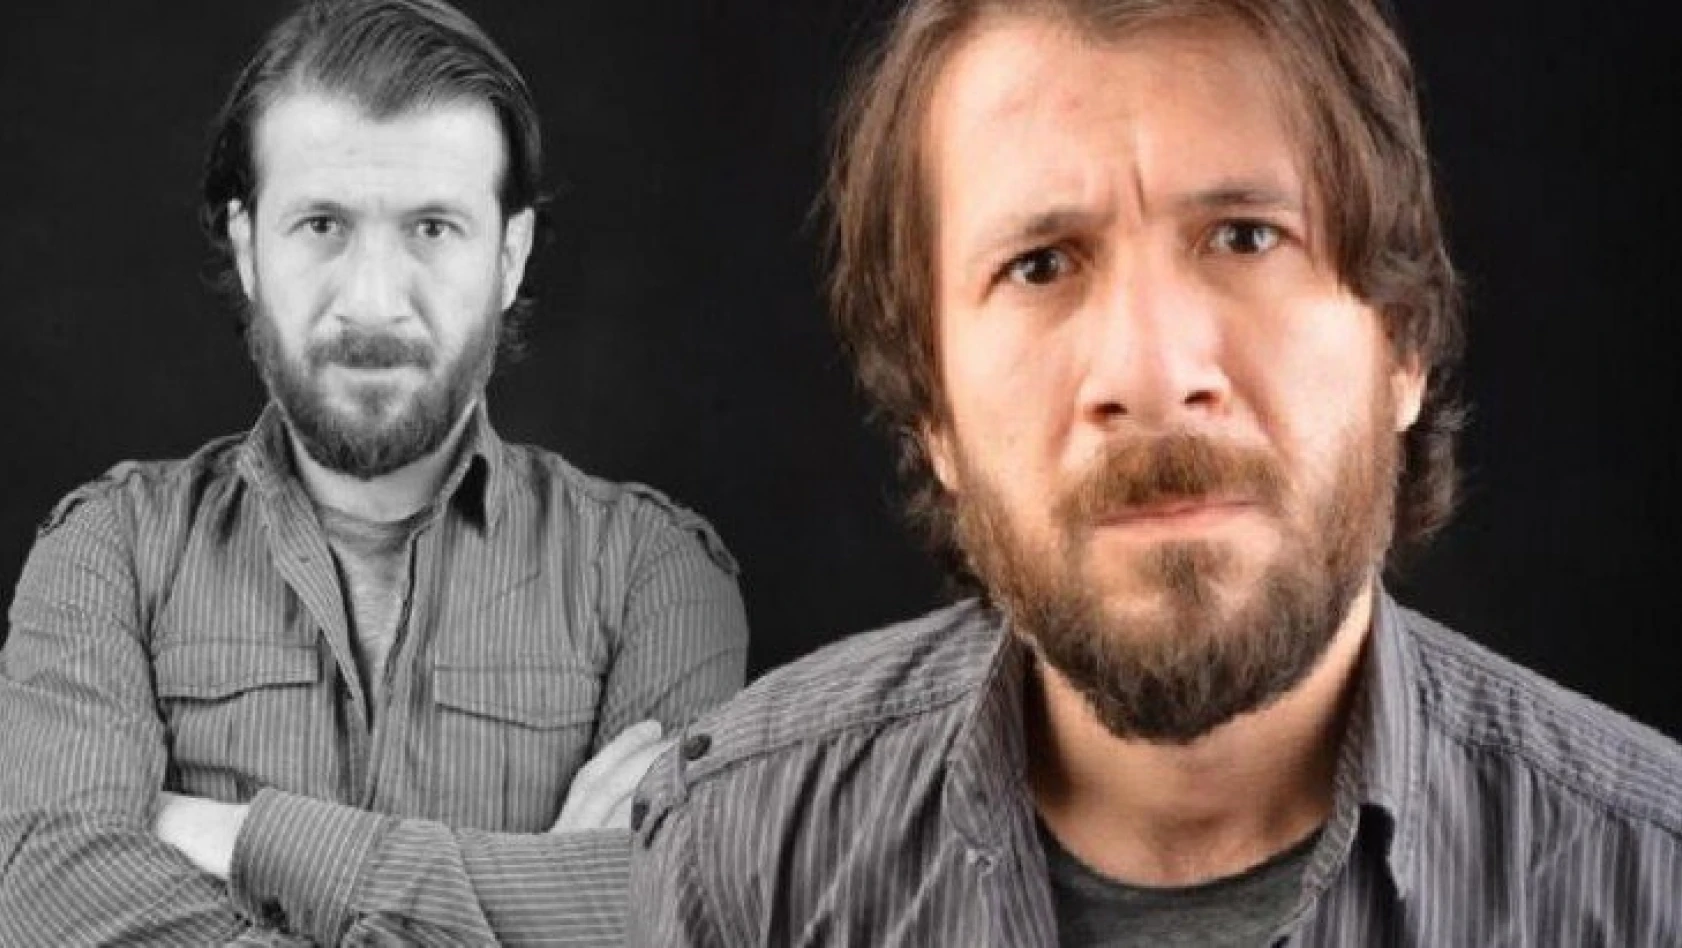 Tiyatro oyuncusu Ercan Yalçıntaş, sahte içkiden hayatını kaybetti